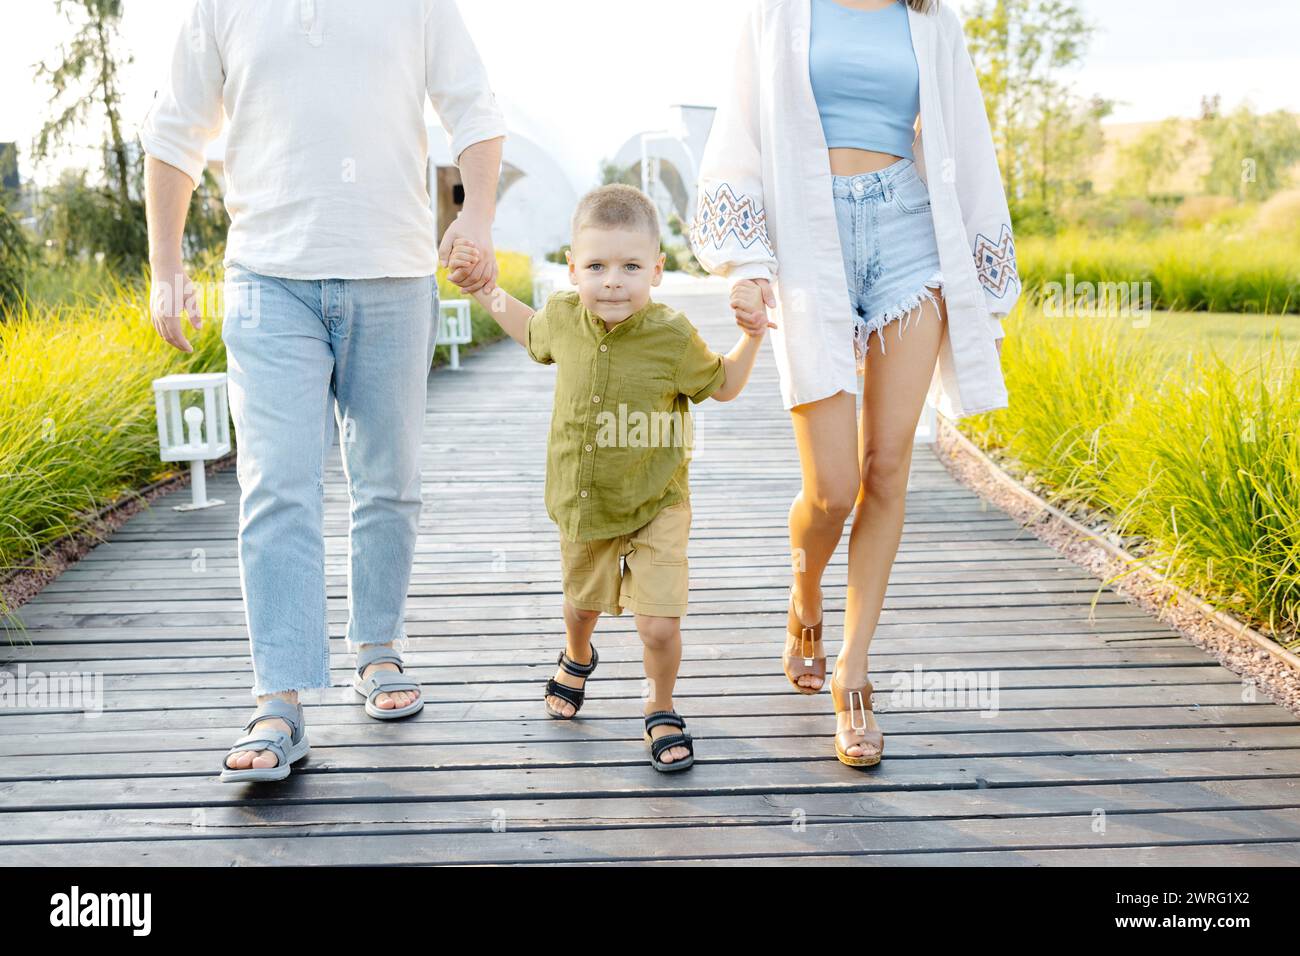 Un uomo e una donna camminano all'aperto con il loro bambino piccolo. La famiglia si sta godendo una passeggiata insieme. Foto Stock